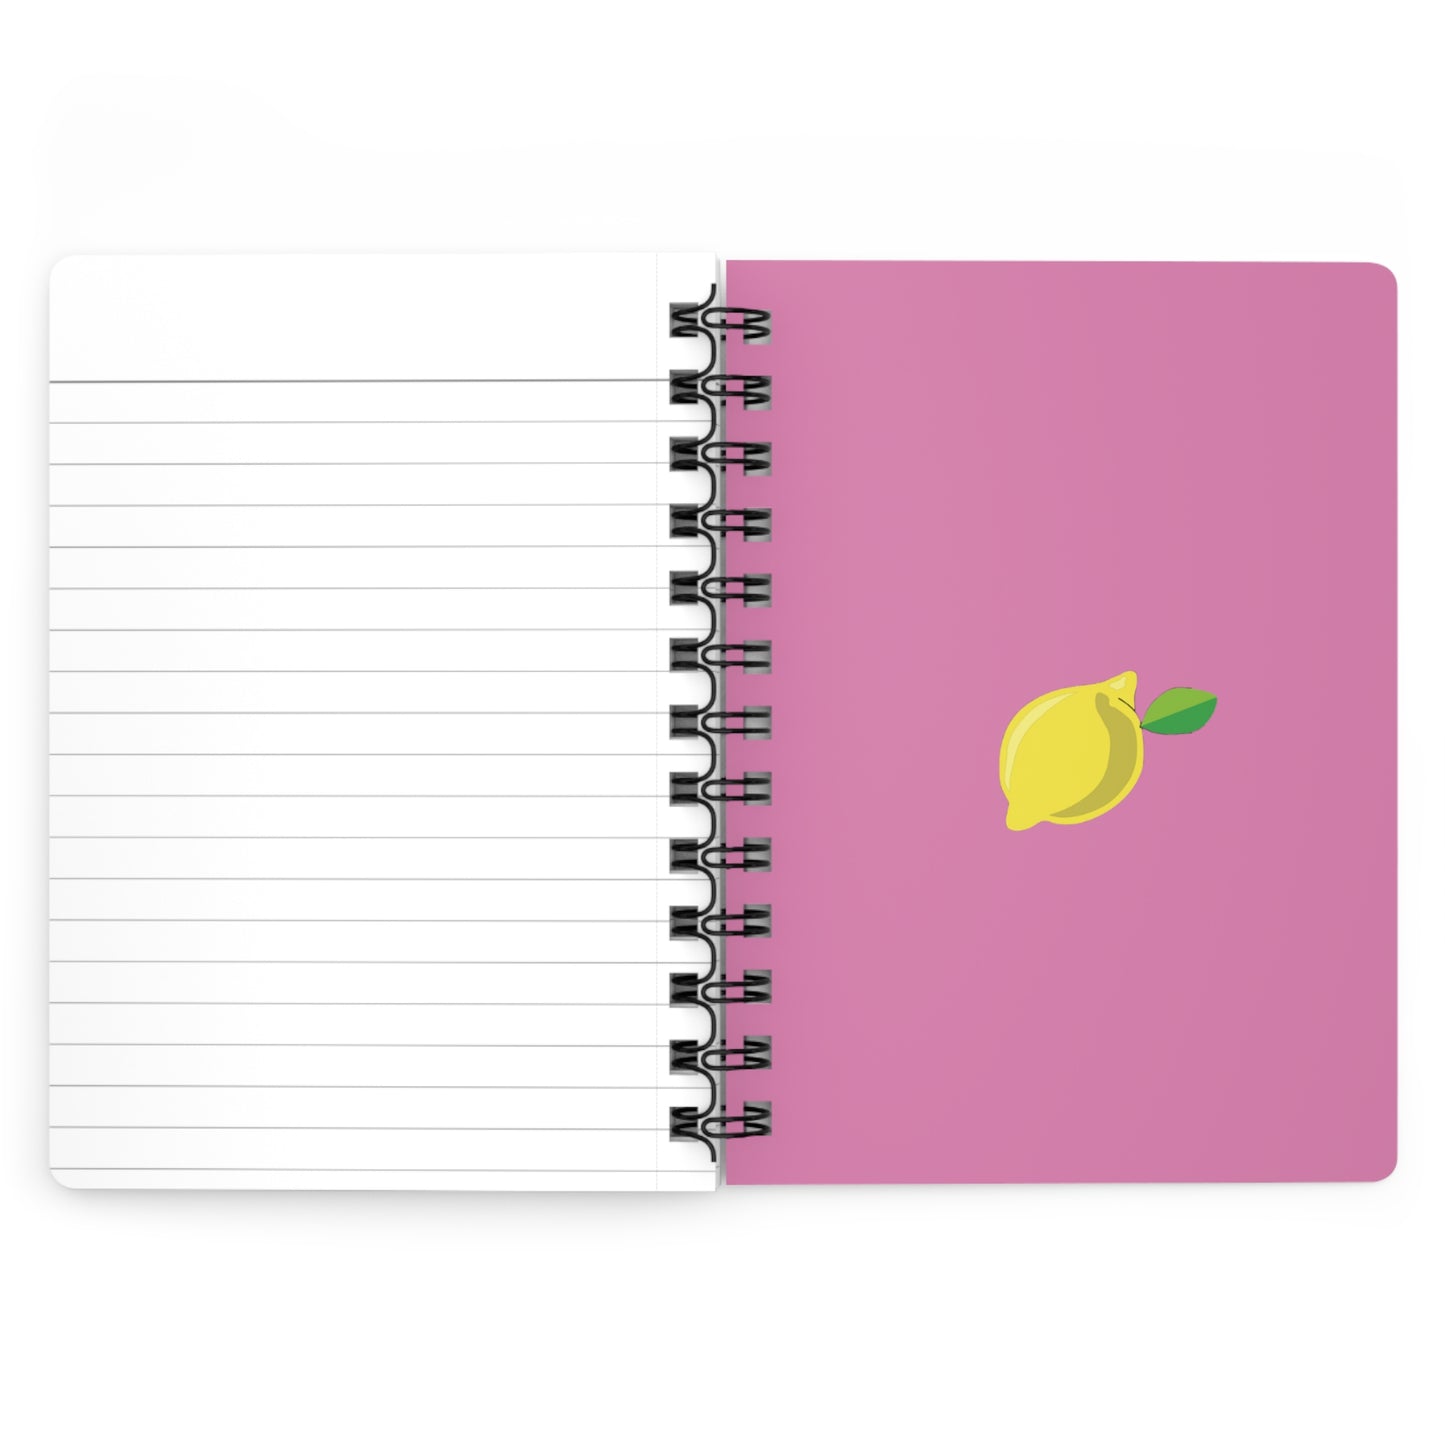 Avva's Signature Lemon Journal